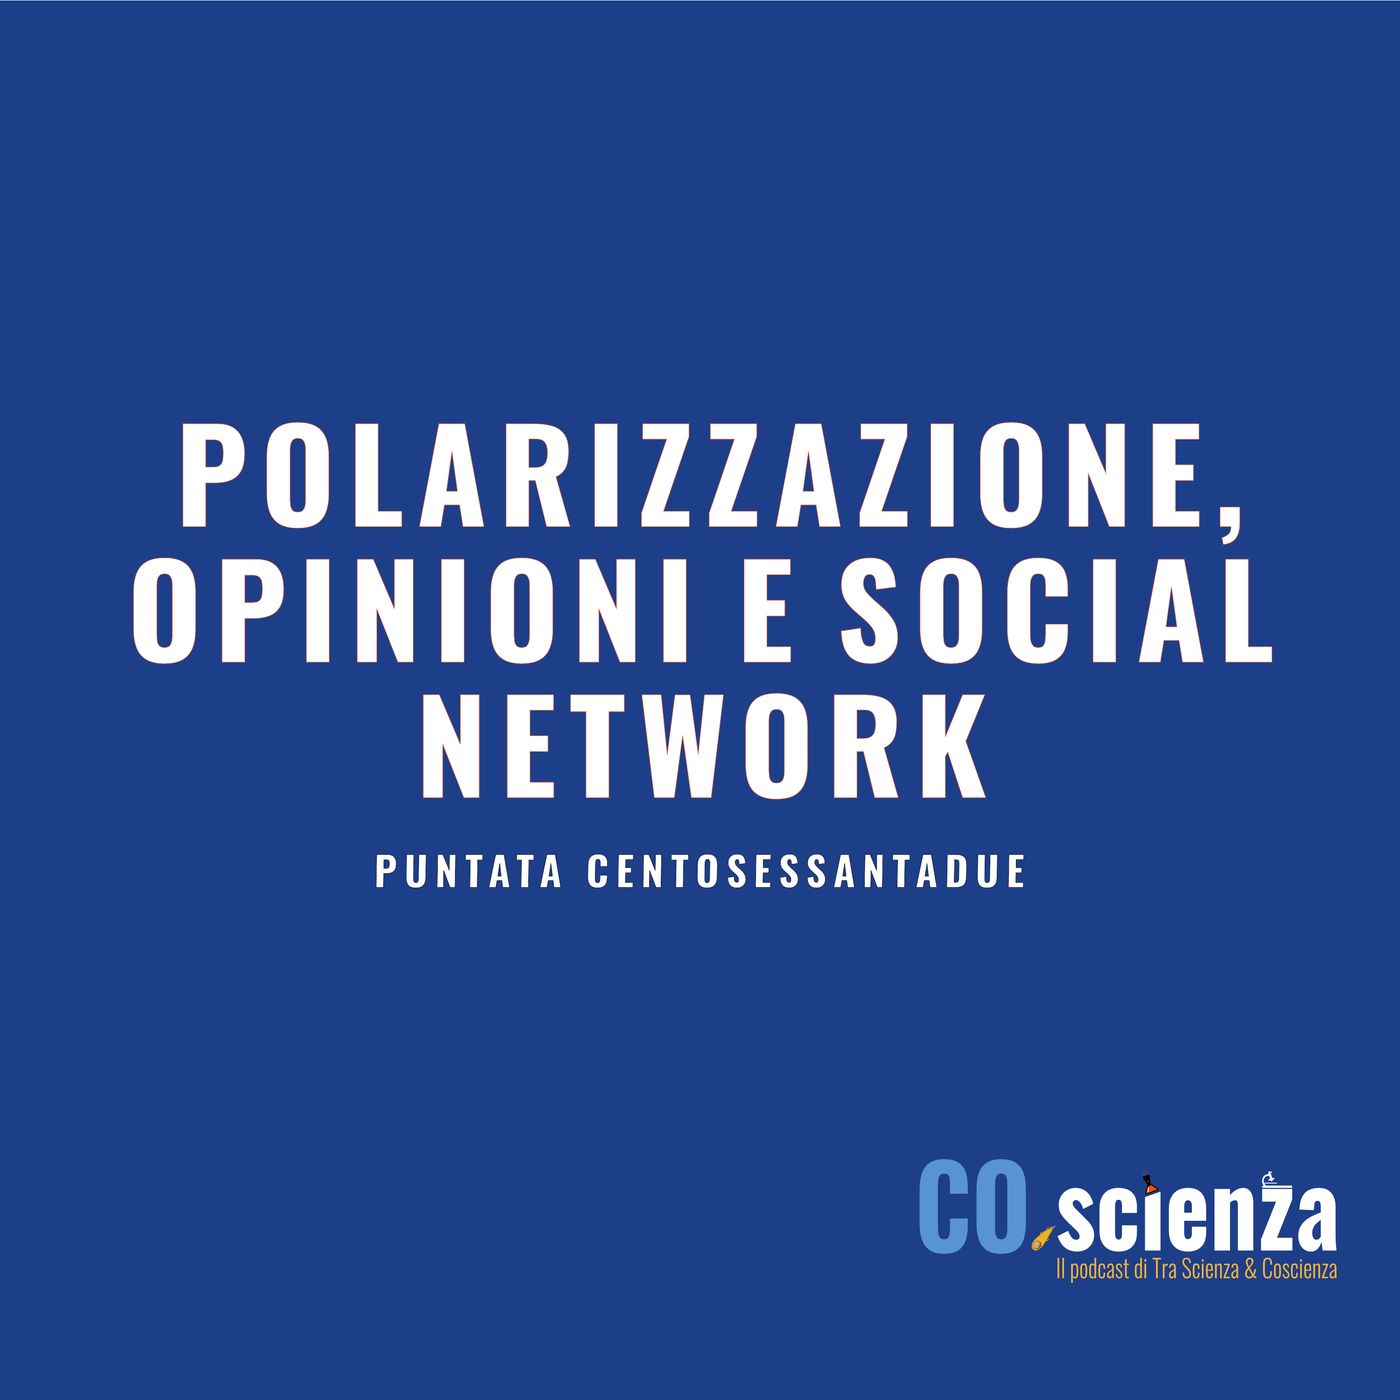 Polarizzazione, opinioni e social network (Puntata centosessantadue)